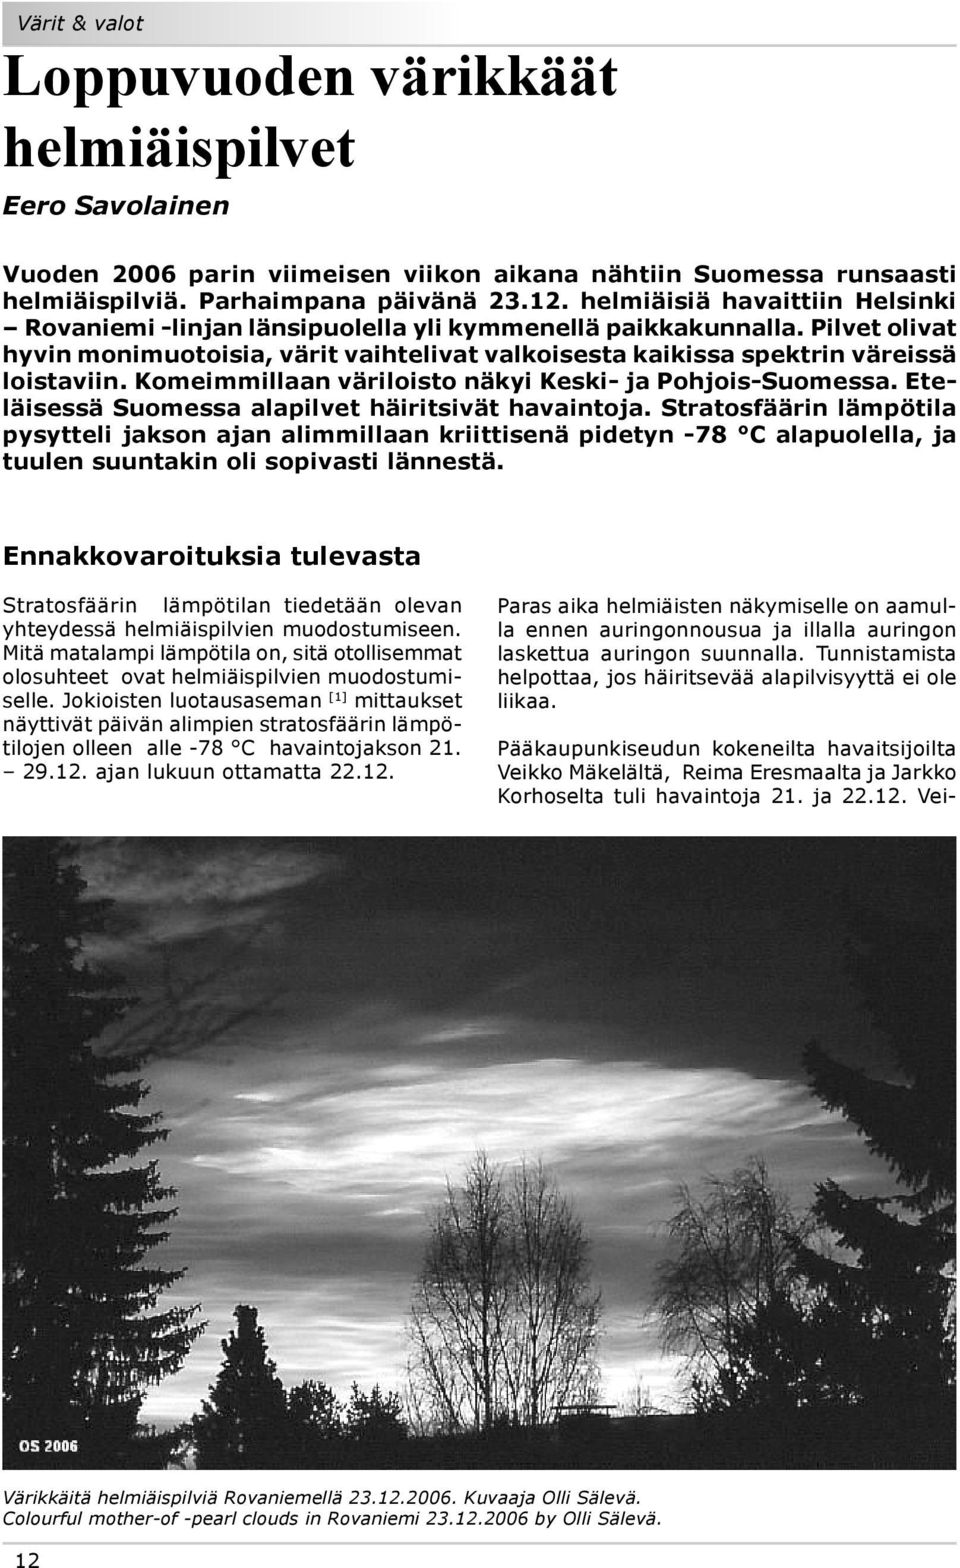 Komeimmillaan väriloisto näkyi Keski- ja Pohjois-Suomessa. Eteläisessä Suomessa alapilvet häiritsivät havaintoja.